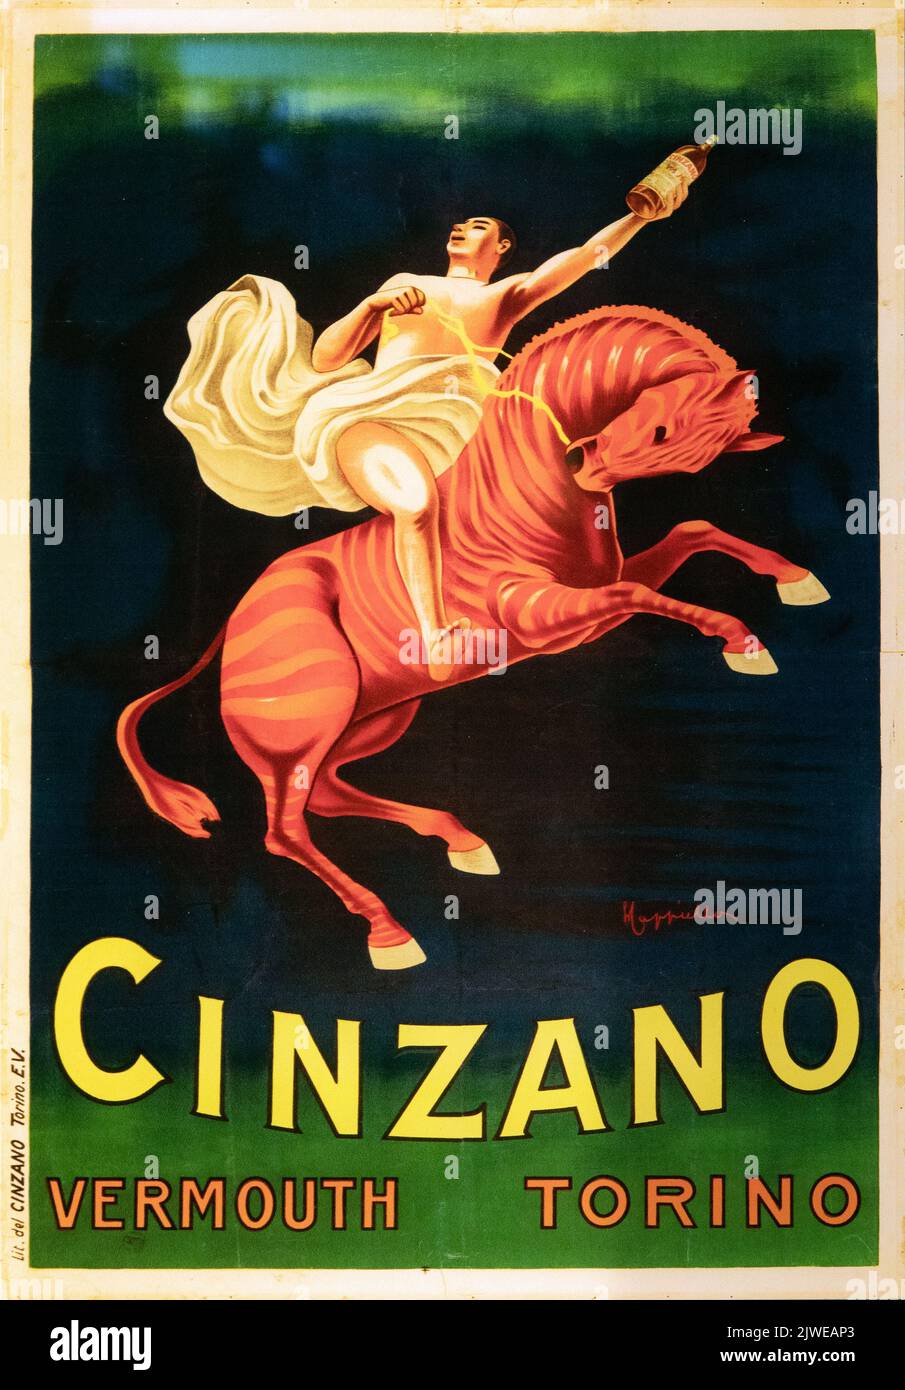 Bel poster vintage di vermouth Cinzano Foto Stock